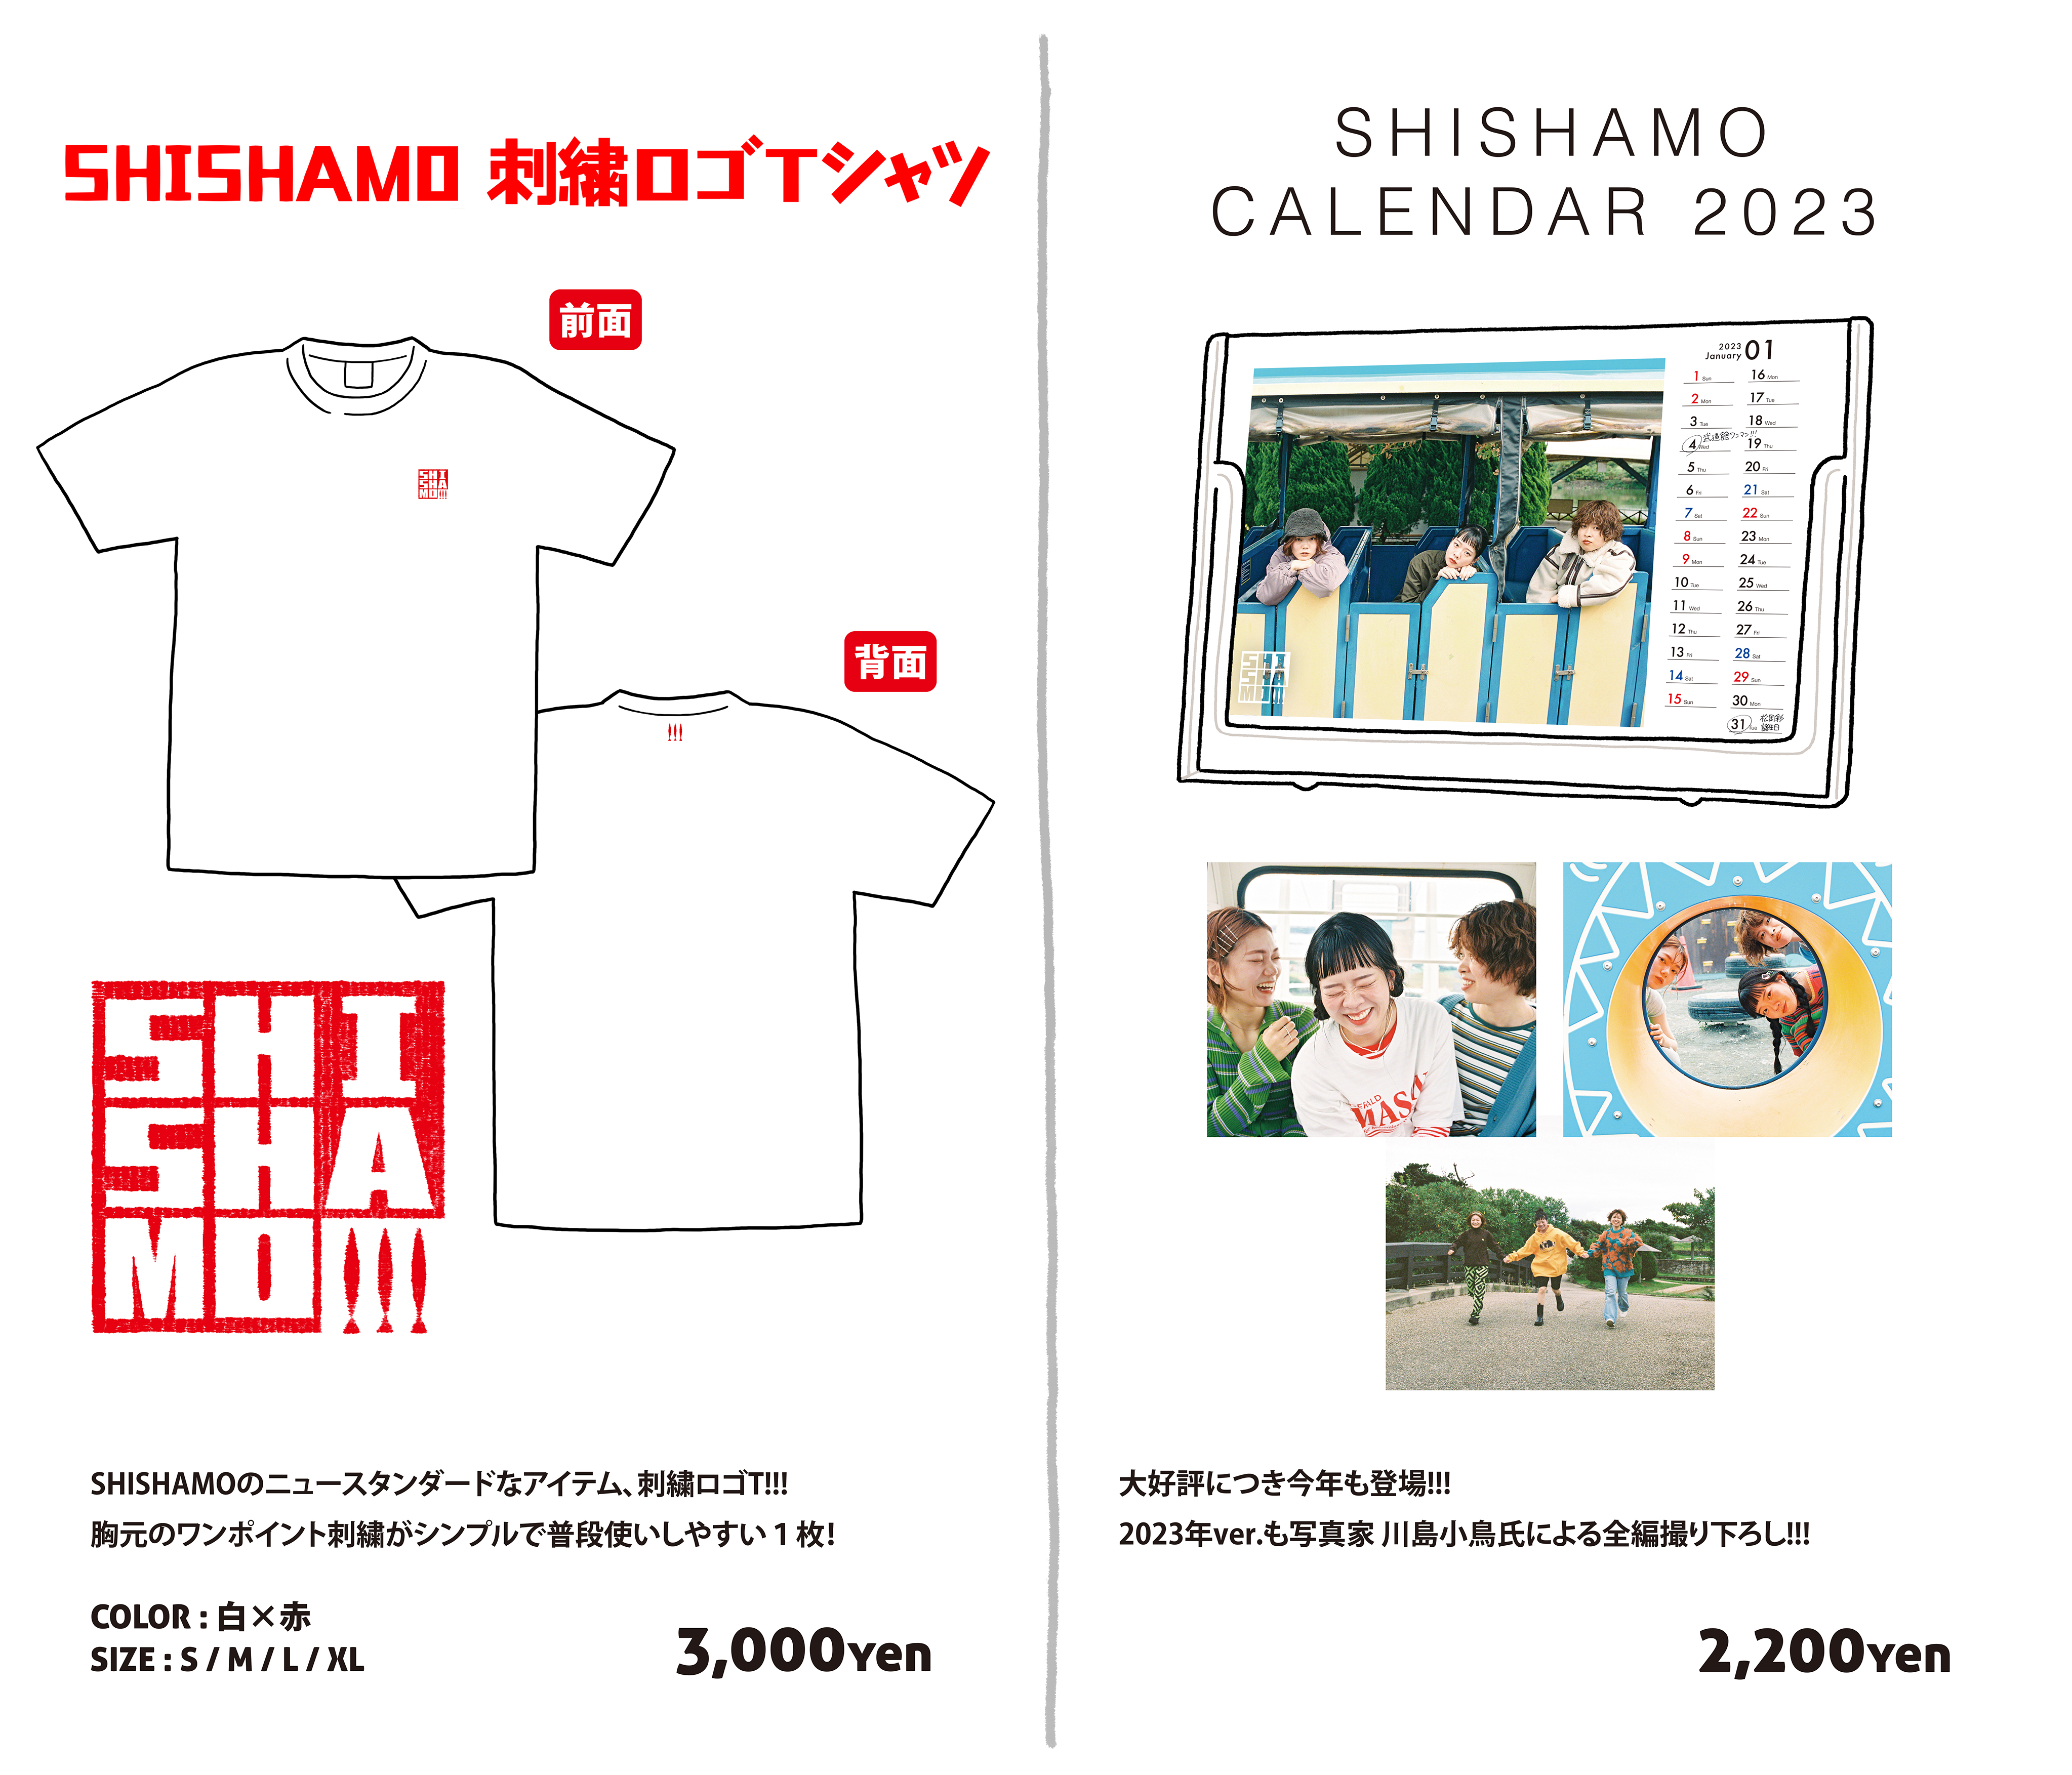 NEW GOODS「SHISHAMO 刺繍ロゴTシャツ」「SHISHAMO CALENDER 2023 